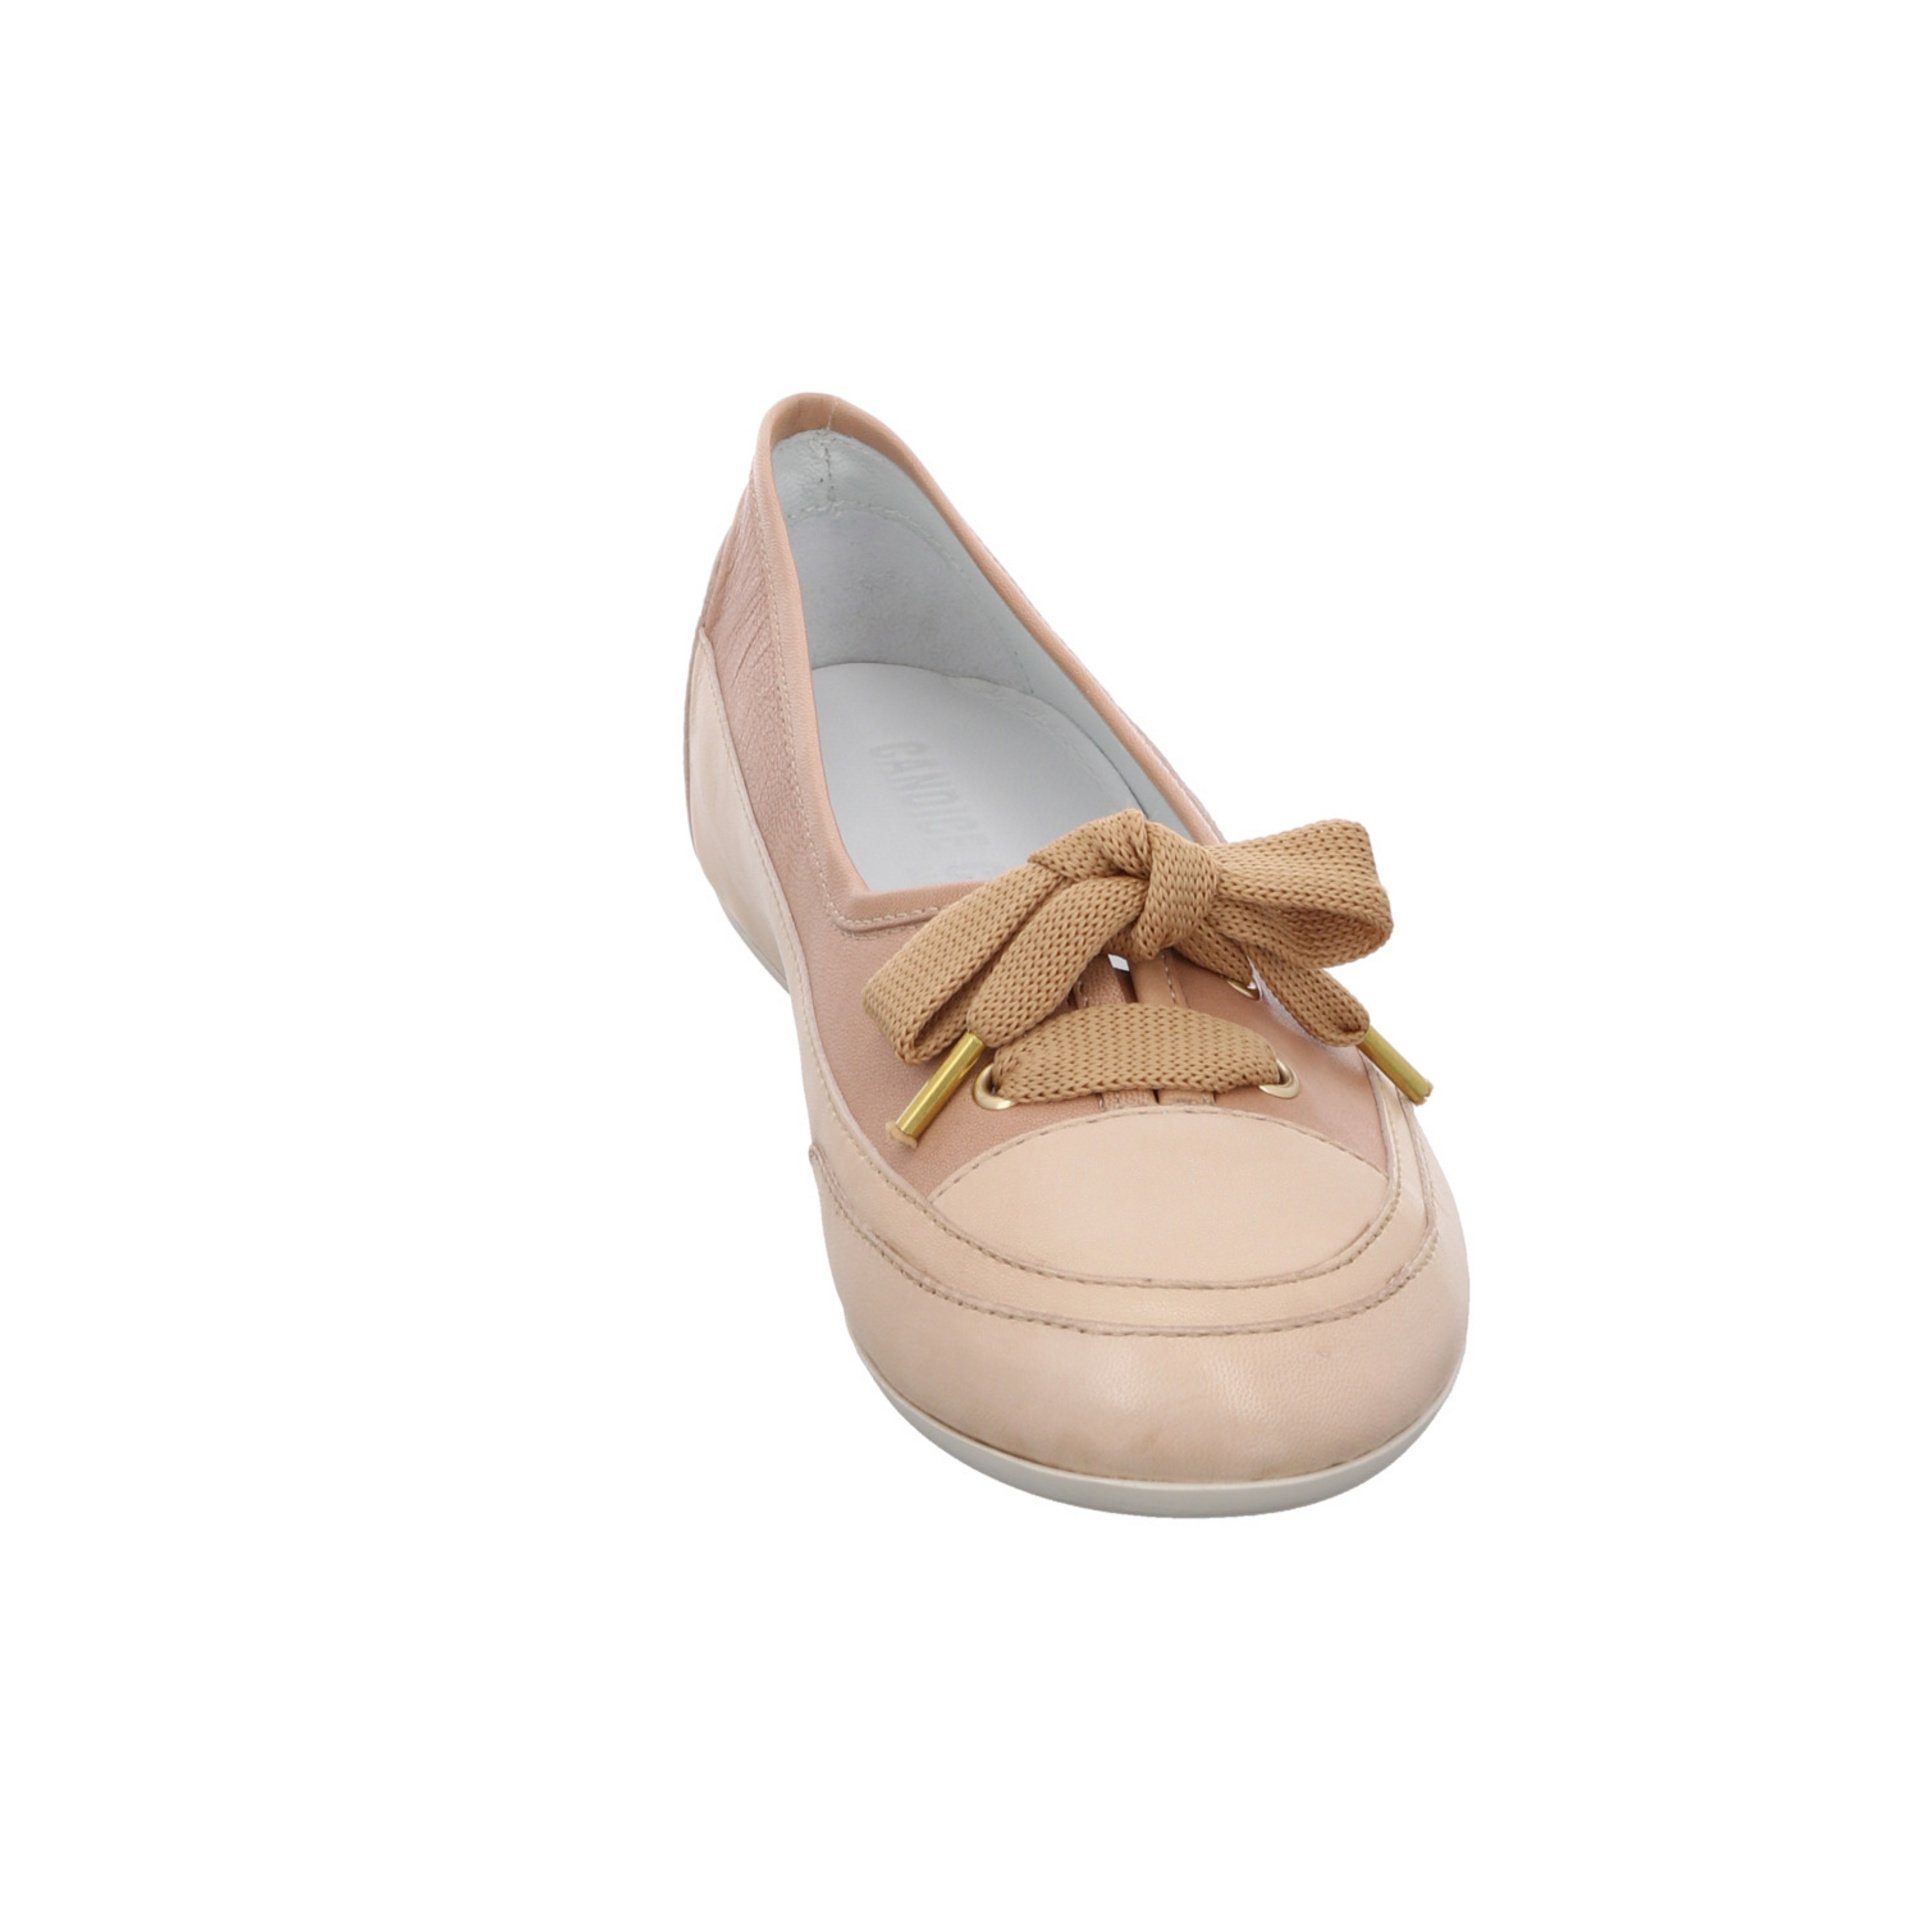 Candice Ballerina Candy Ballerina ecru/cappuccino Cooper Ballerinas Bow Glattleder Schuhe Flats Bequem